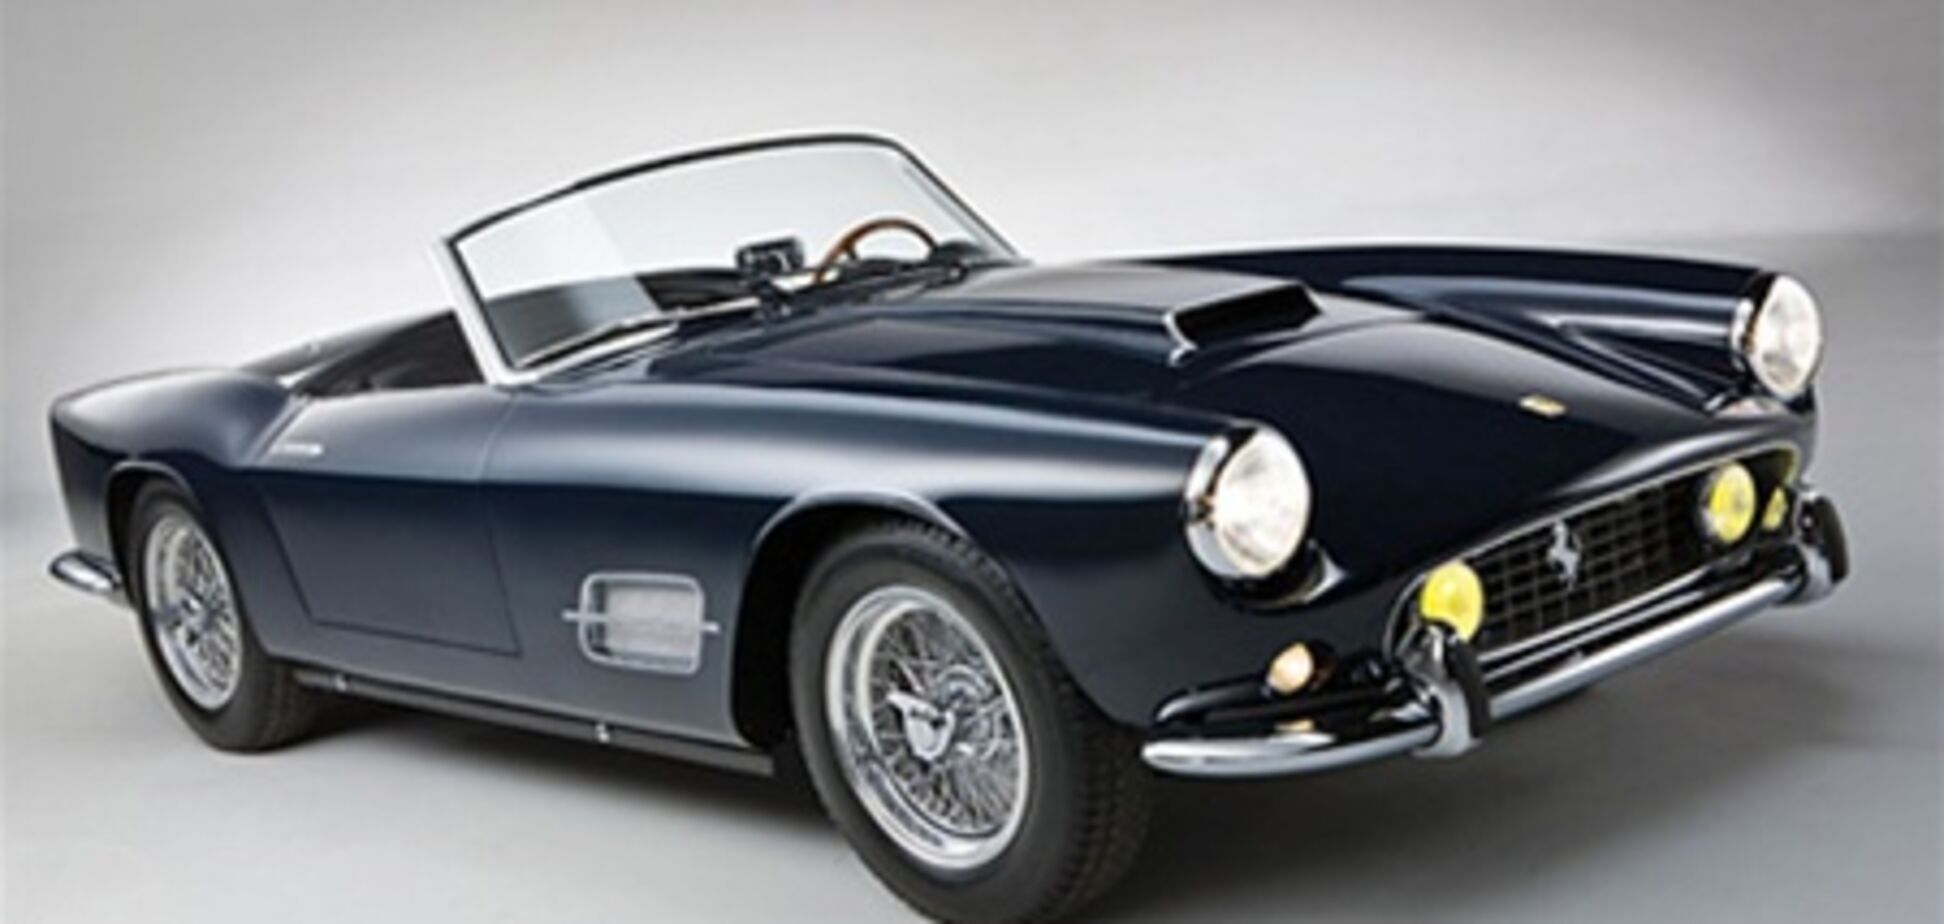 За выходные аукцион классических автомобилей заработал 32 миллиона евро